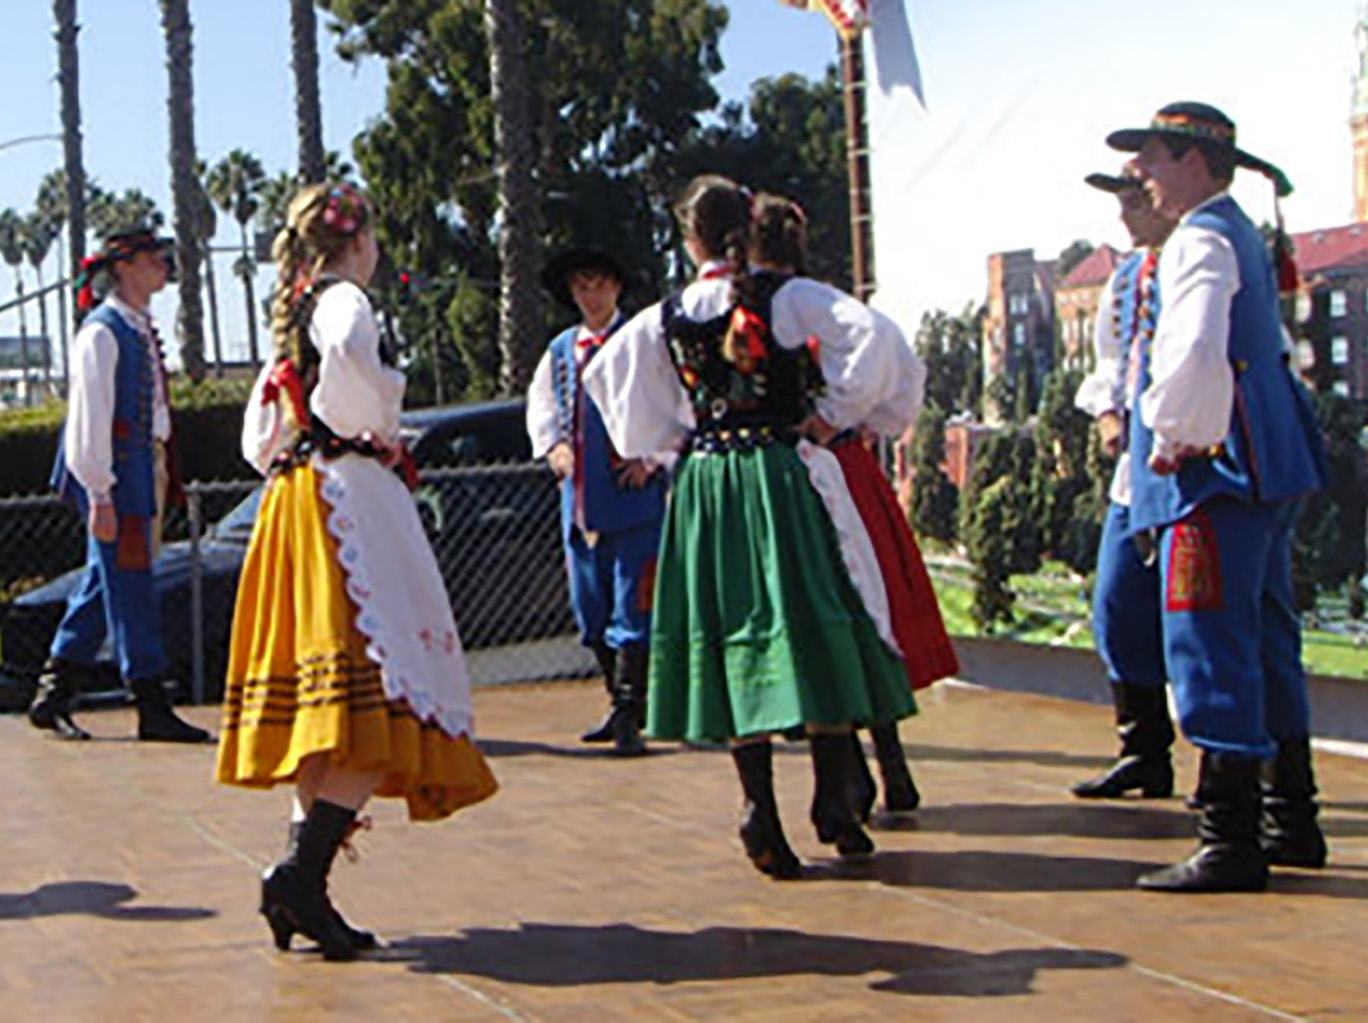 Annual Polish Festival San Diego, CA